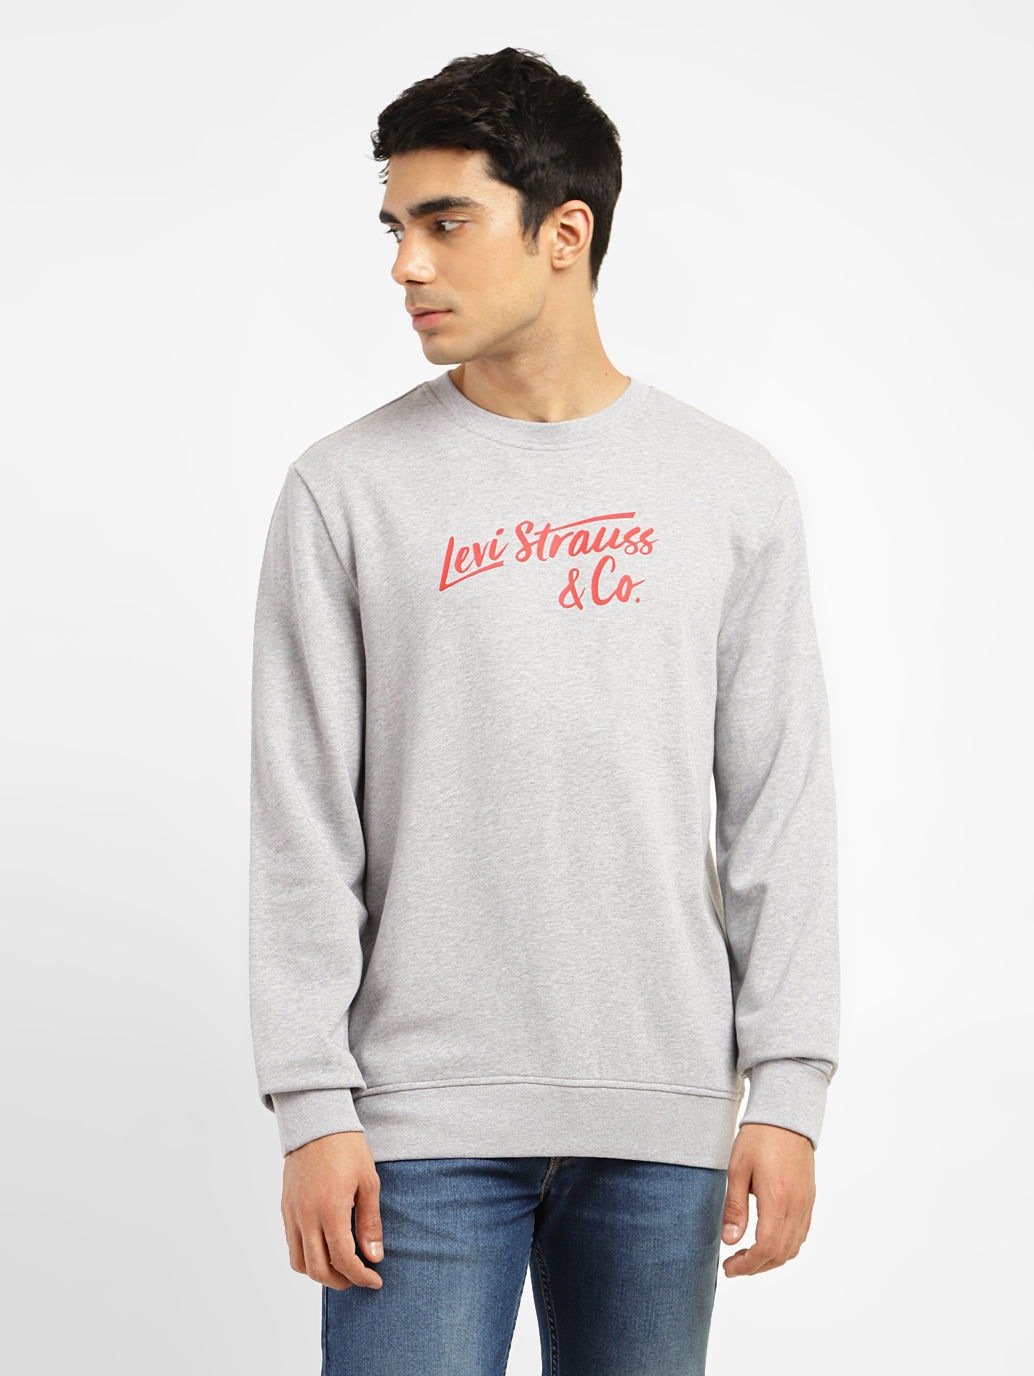 Men's Graphic Print White Crew Neck Sweatshirt – Levis India Store